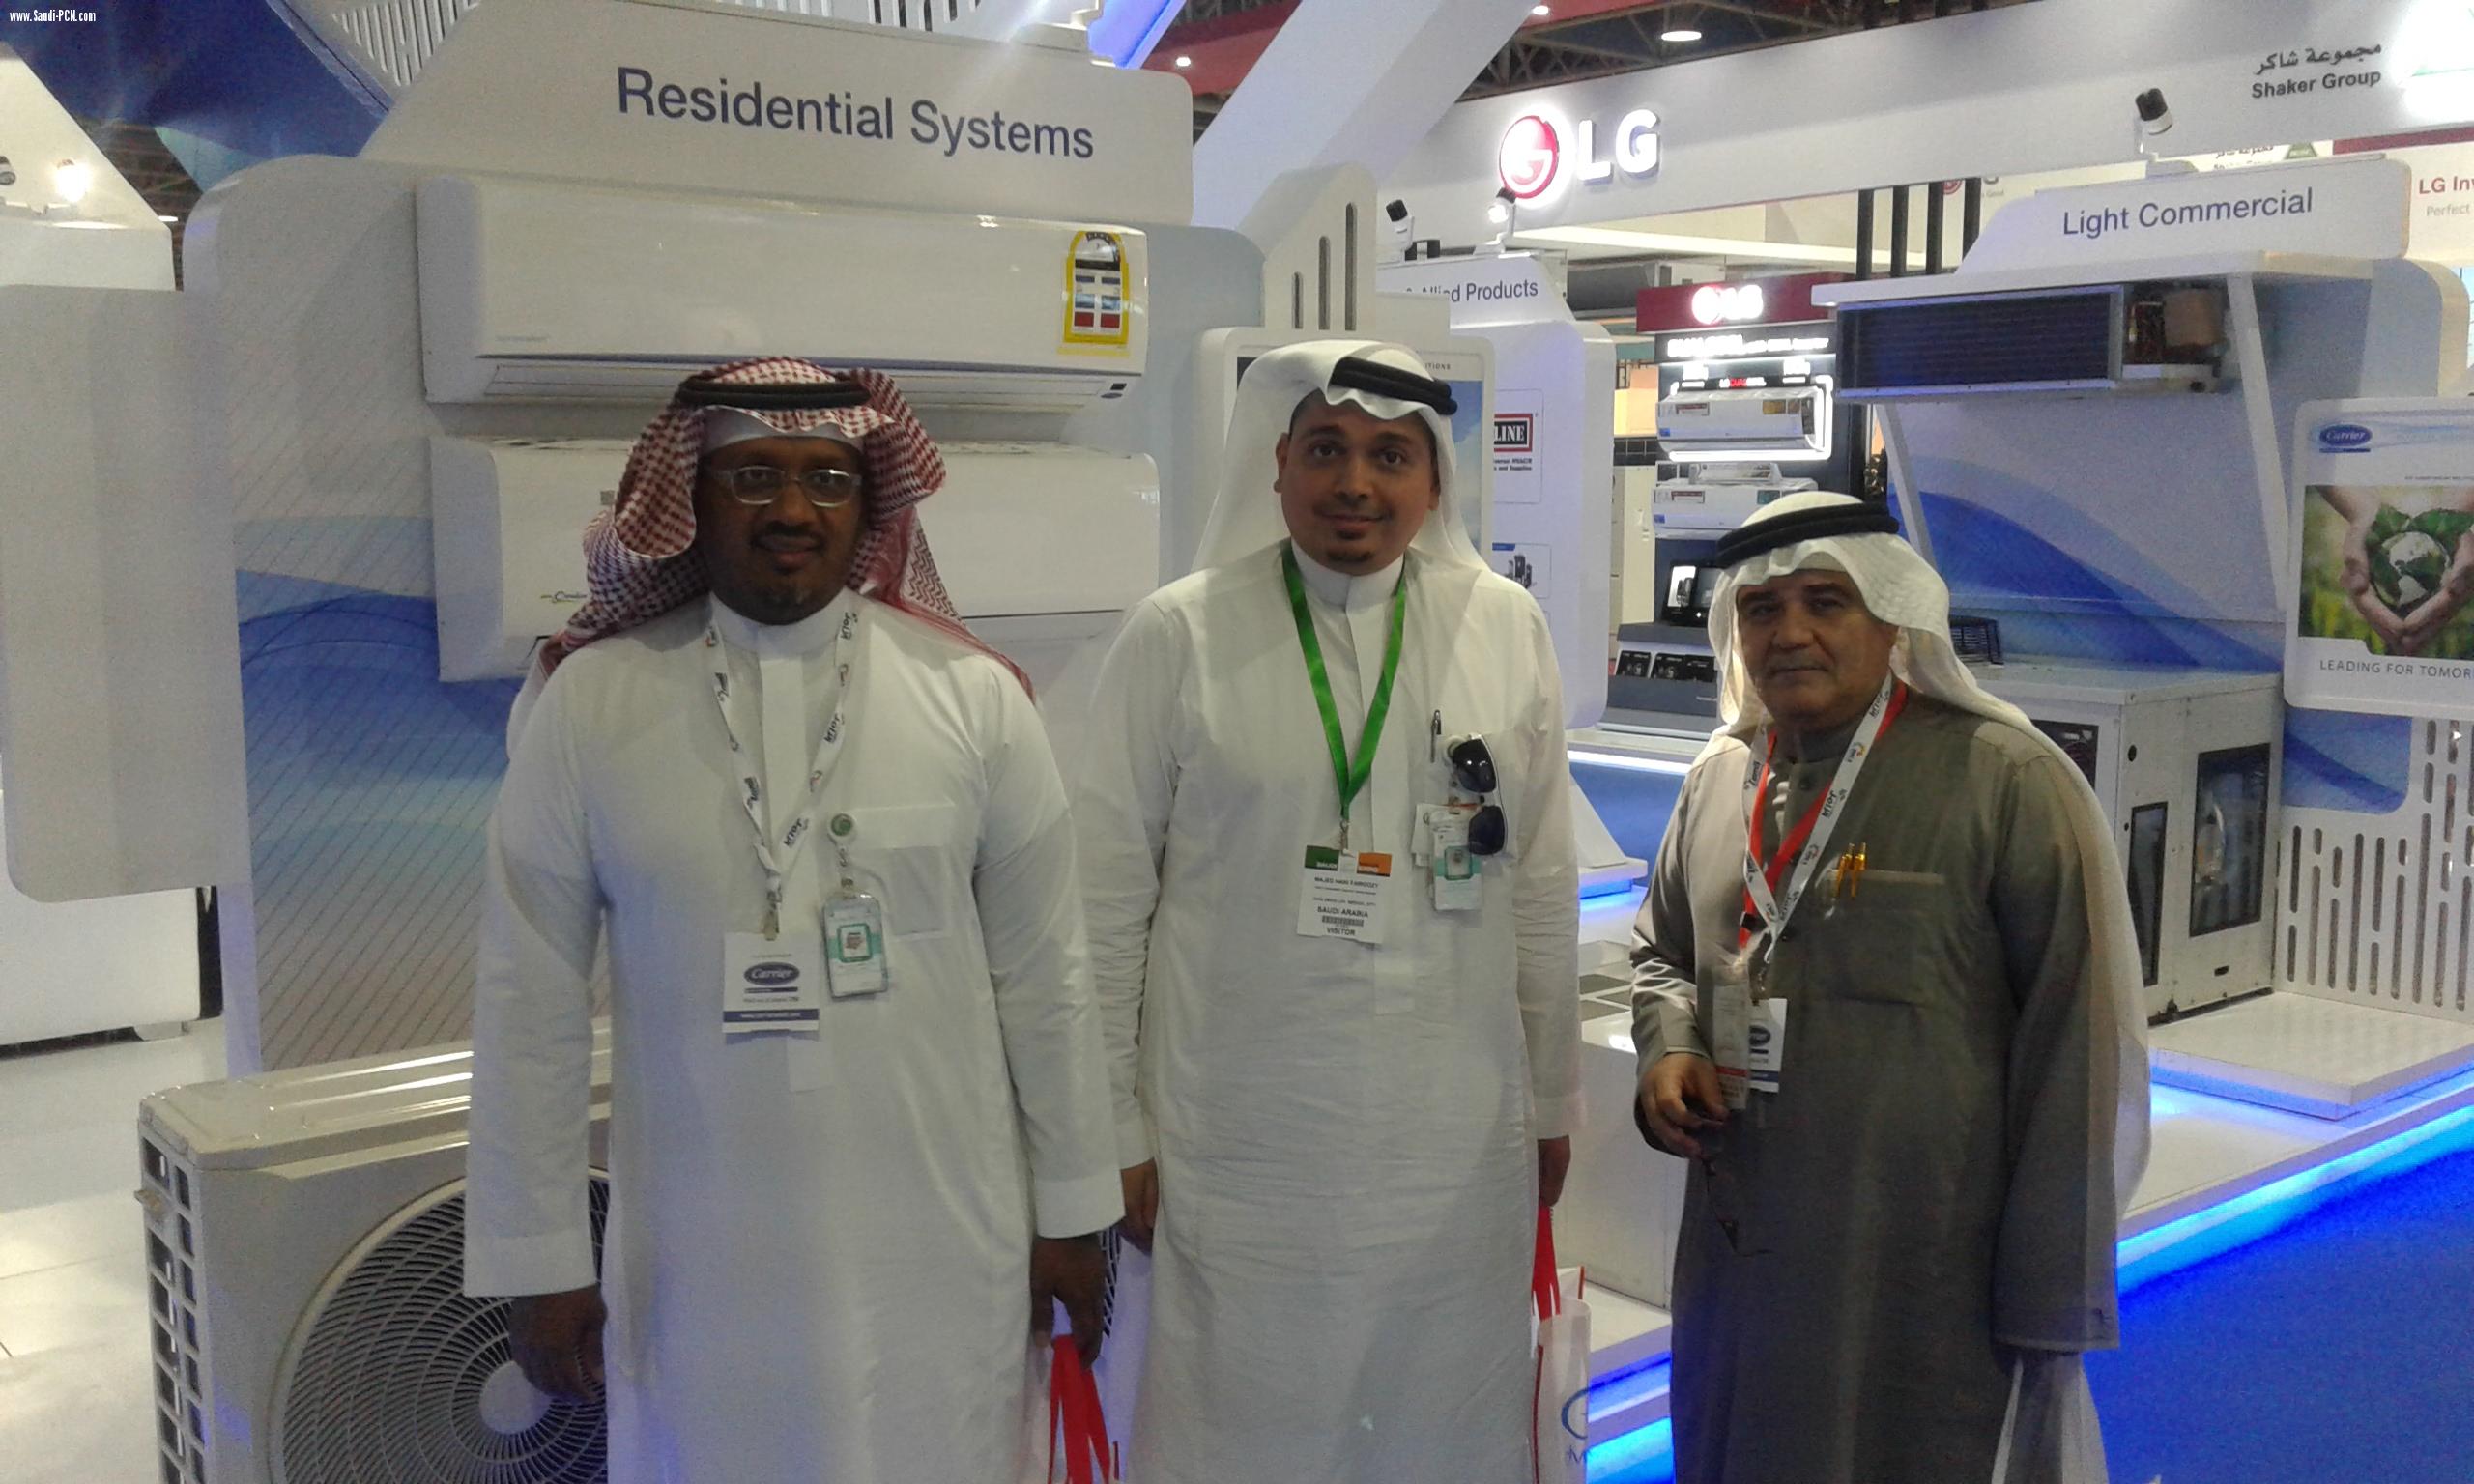 أكثر من عشرة الاف زائر للمعرض الدولي للتكييف “HVACR Expo Saudi”        وأجماع المختصين على جودة المضمون ودقة وروعة التنظيم